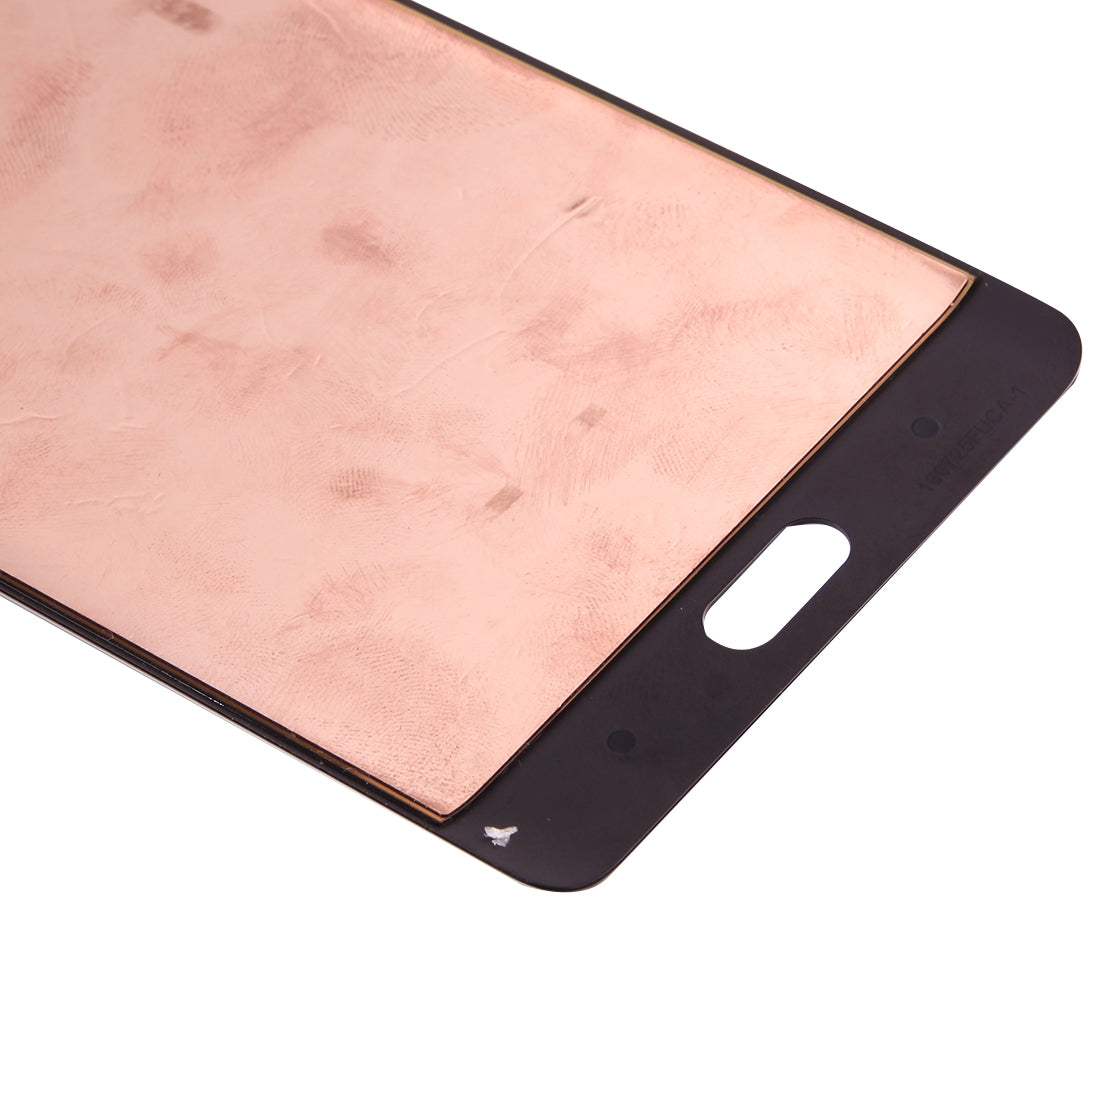 Pantalla LCD + Tactil Digitalizador Xiaomi MI Note 2 Negro